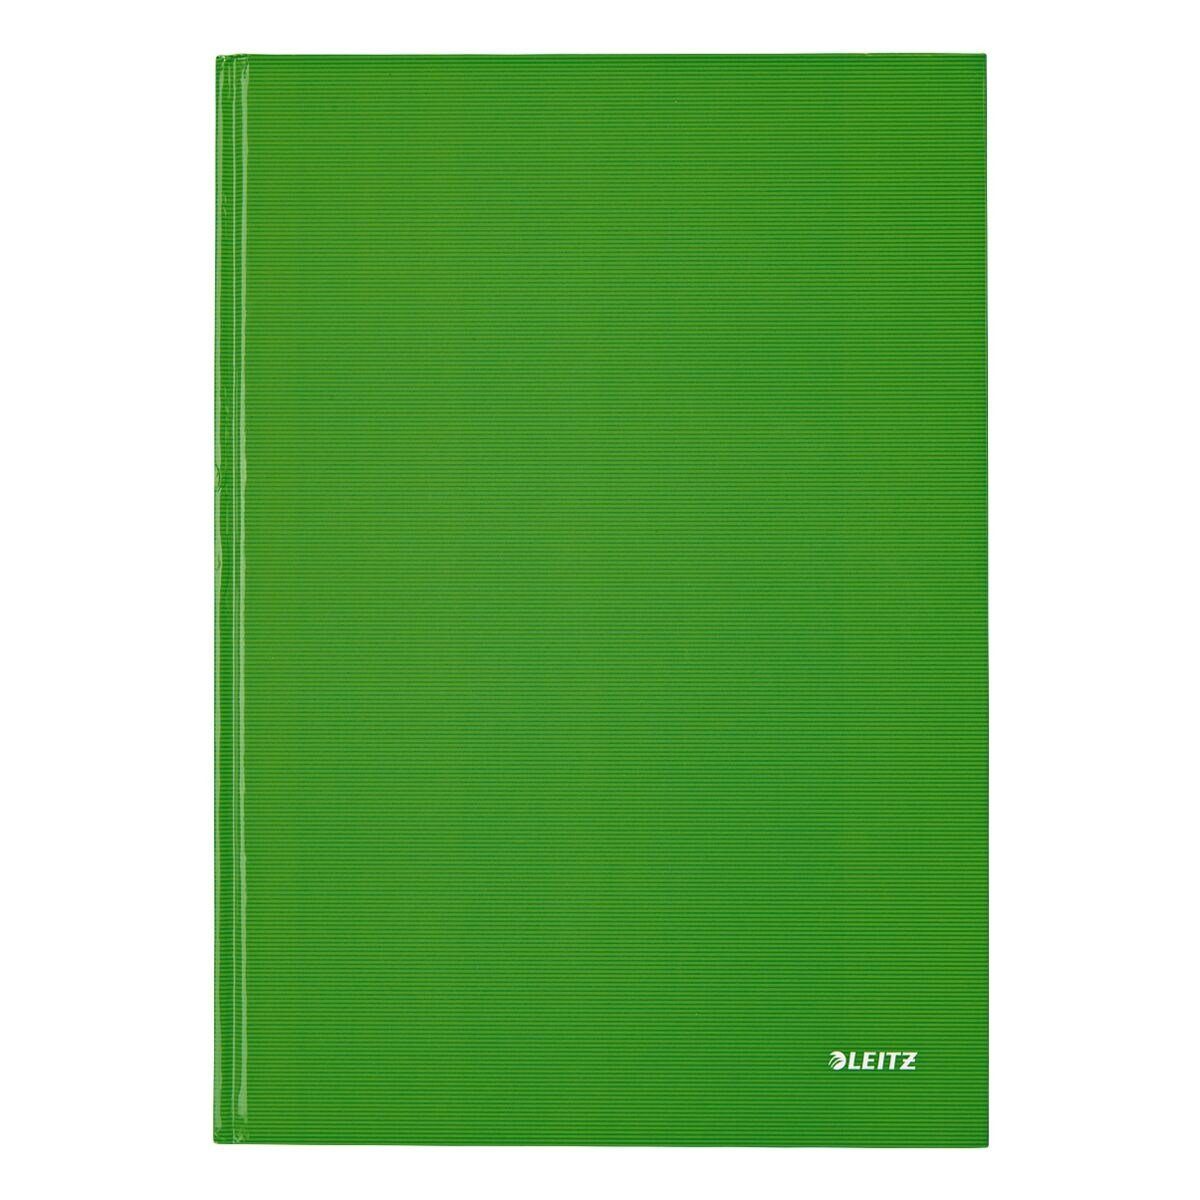 LEITZ Notizbuch Solid 4666, kariert, Introseiten, Hardcover hellgrün mit